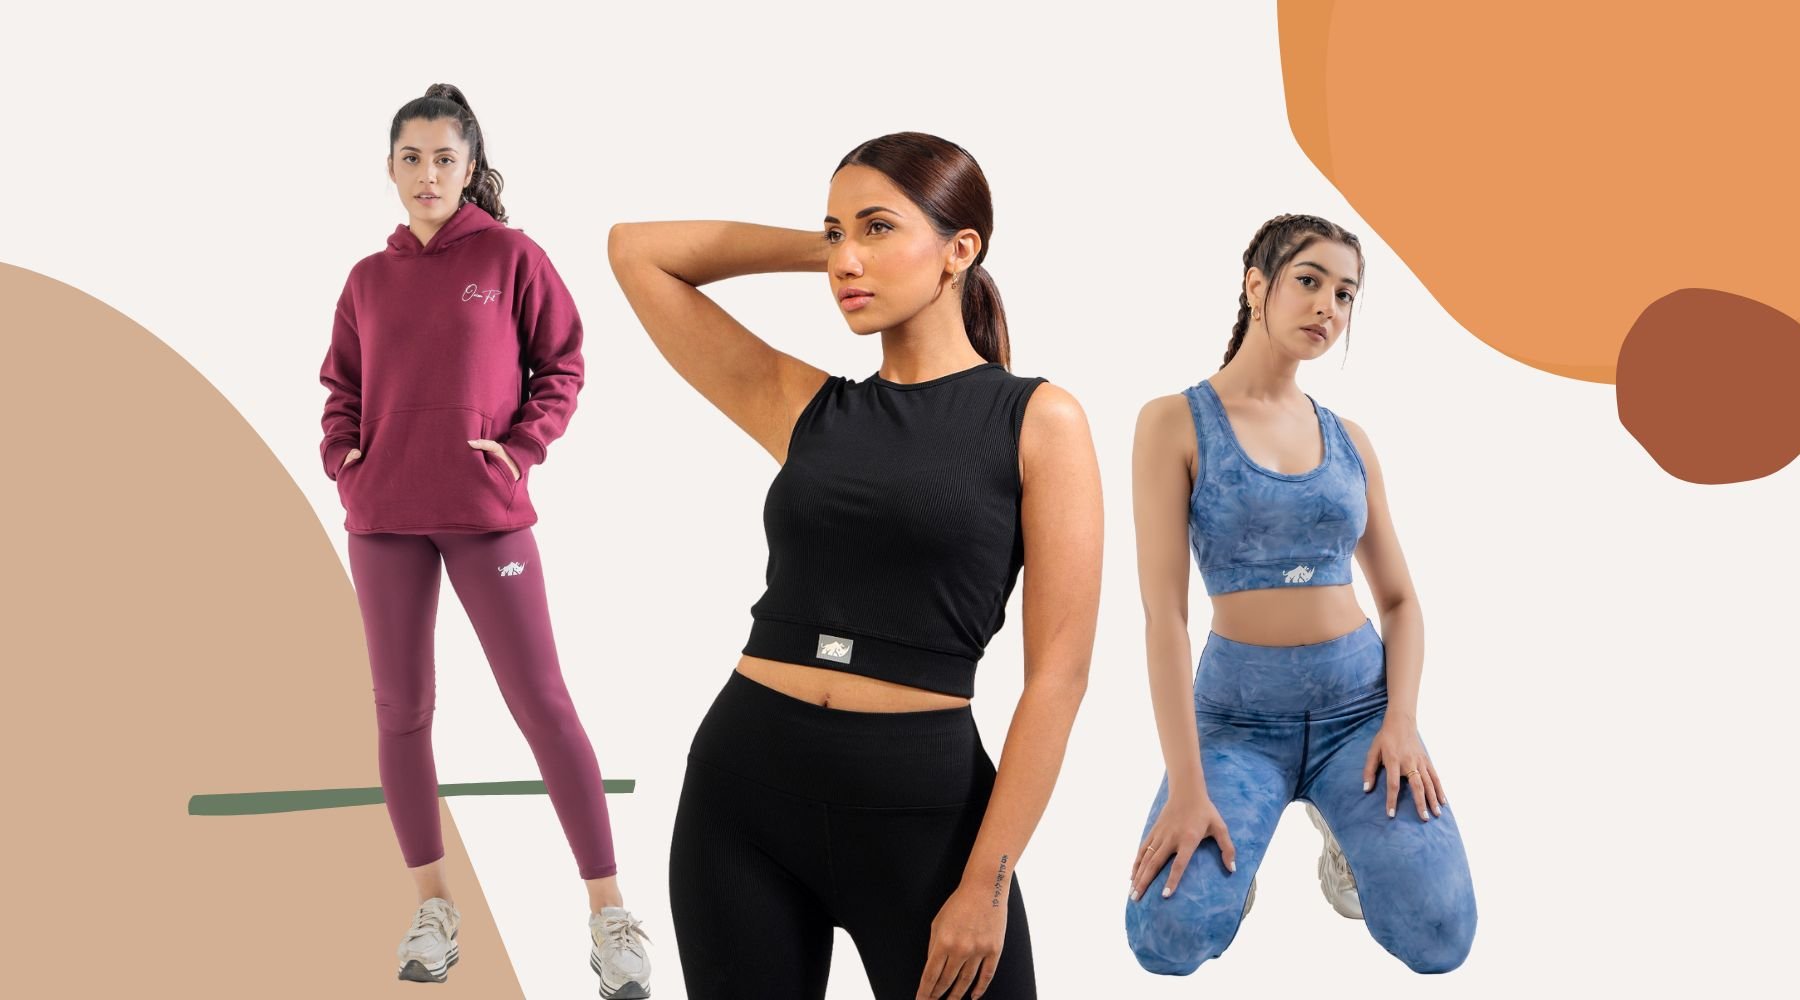 Buy Women Gym Wear Online in Pakistan - Women Gym Sets